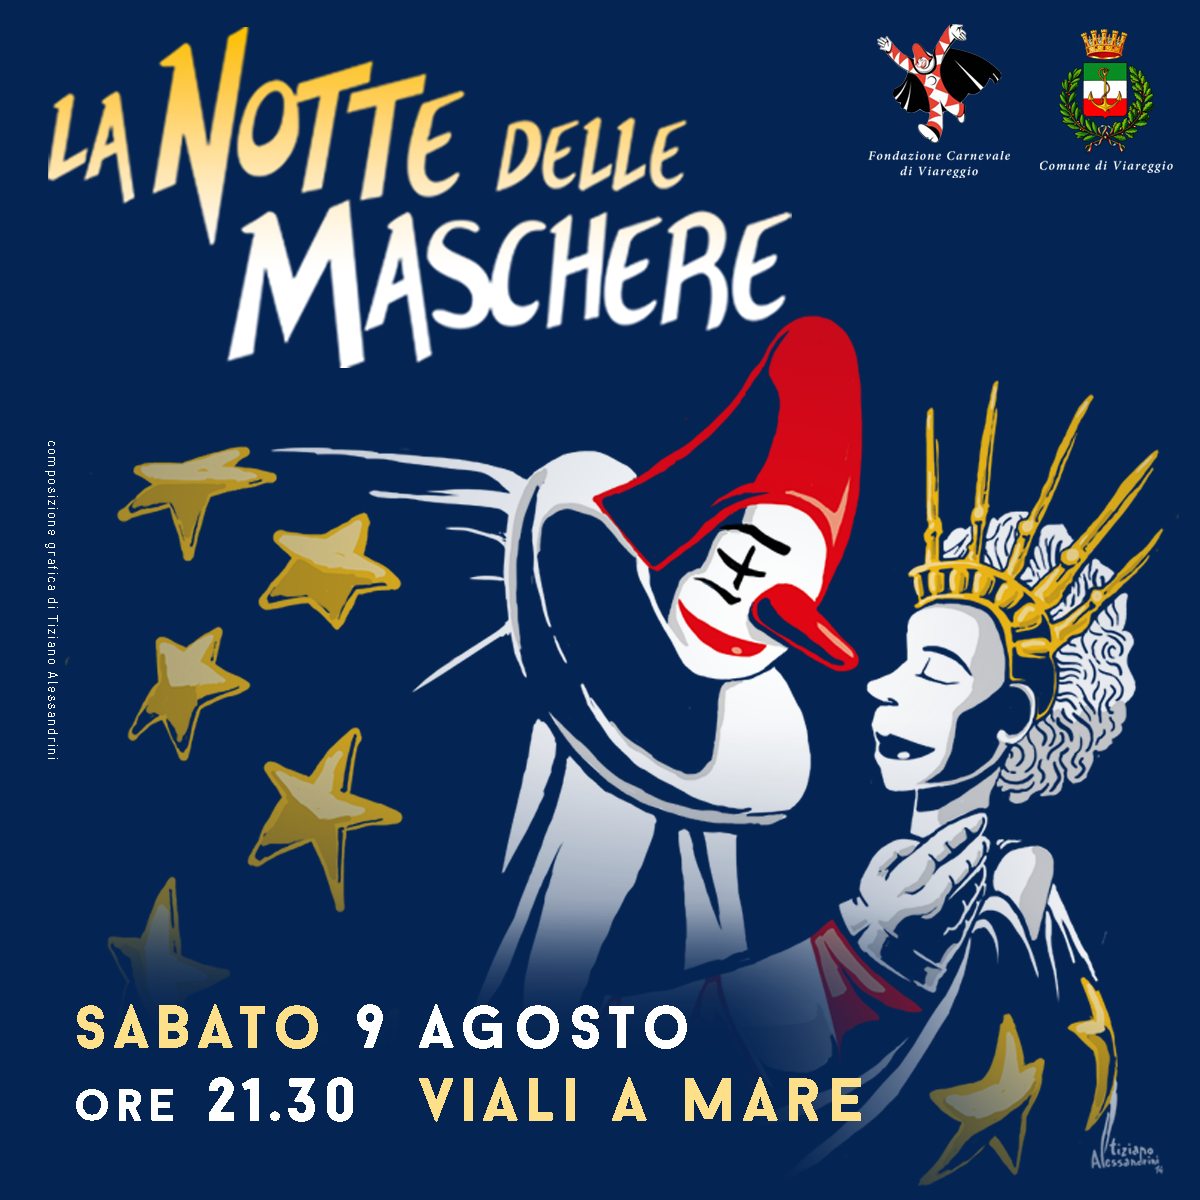 La Notte delle Maschere, #summercarnival2014, si terrà a Viareggio il 9/08/2014 e vedrà protagonisti i grandi carri allegorici del Carnevale